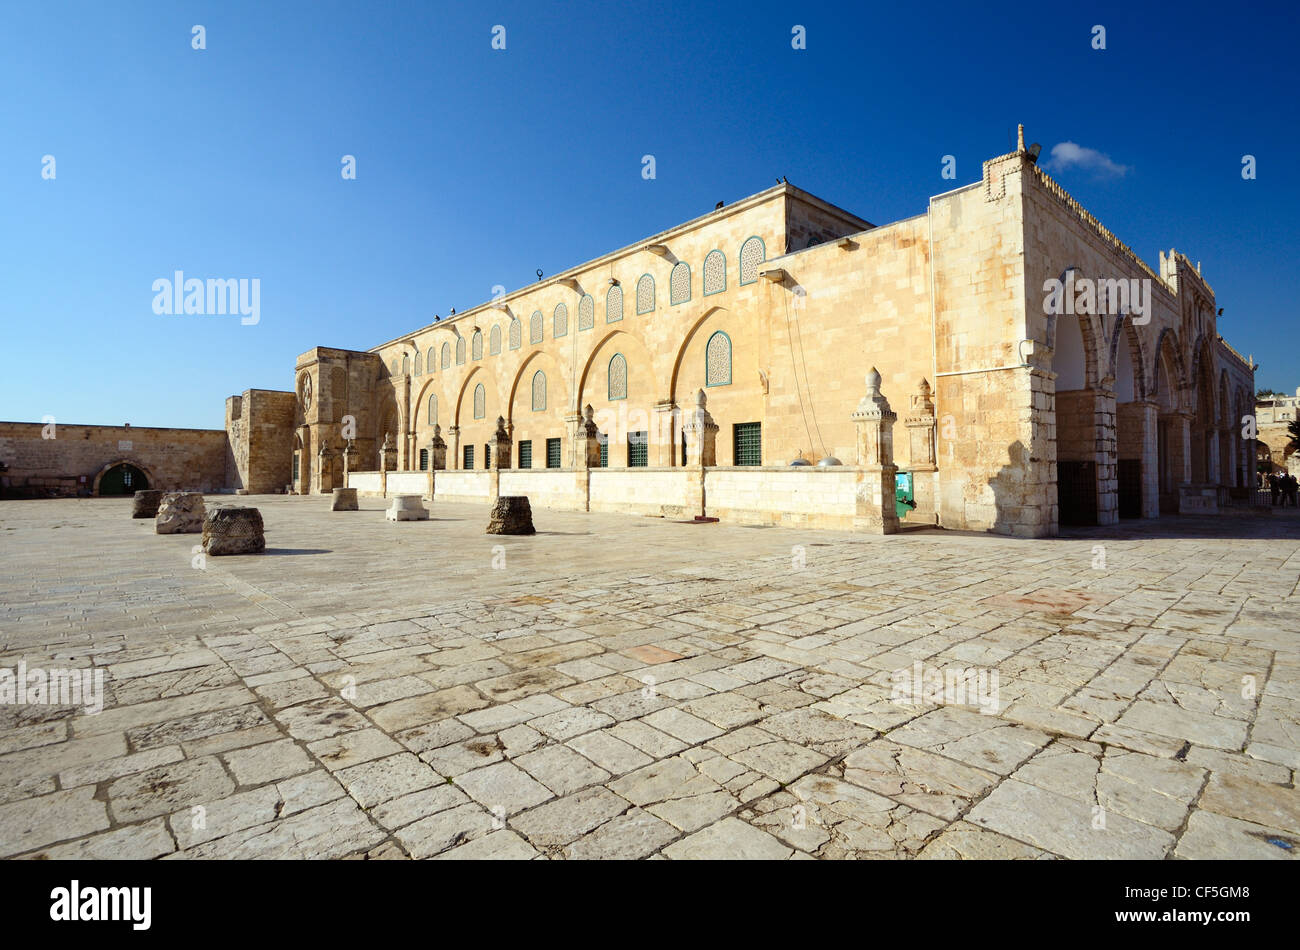 Moschea Al Aqsa in Gerusalemme, il terzo sito più sacro dell'Islam. Foto Stock